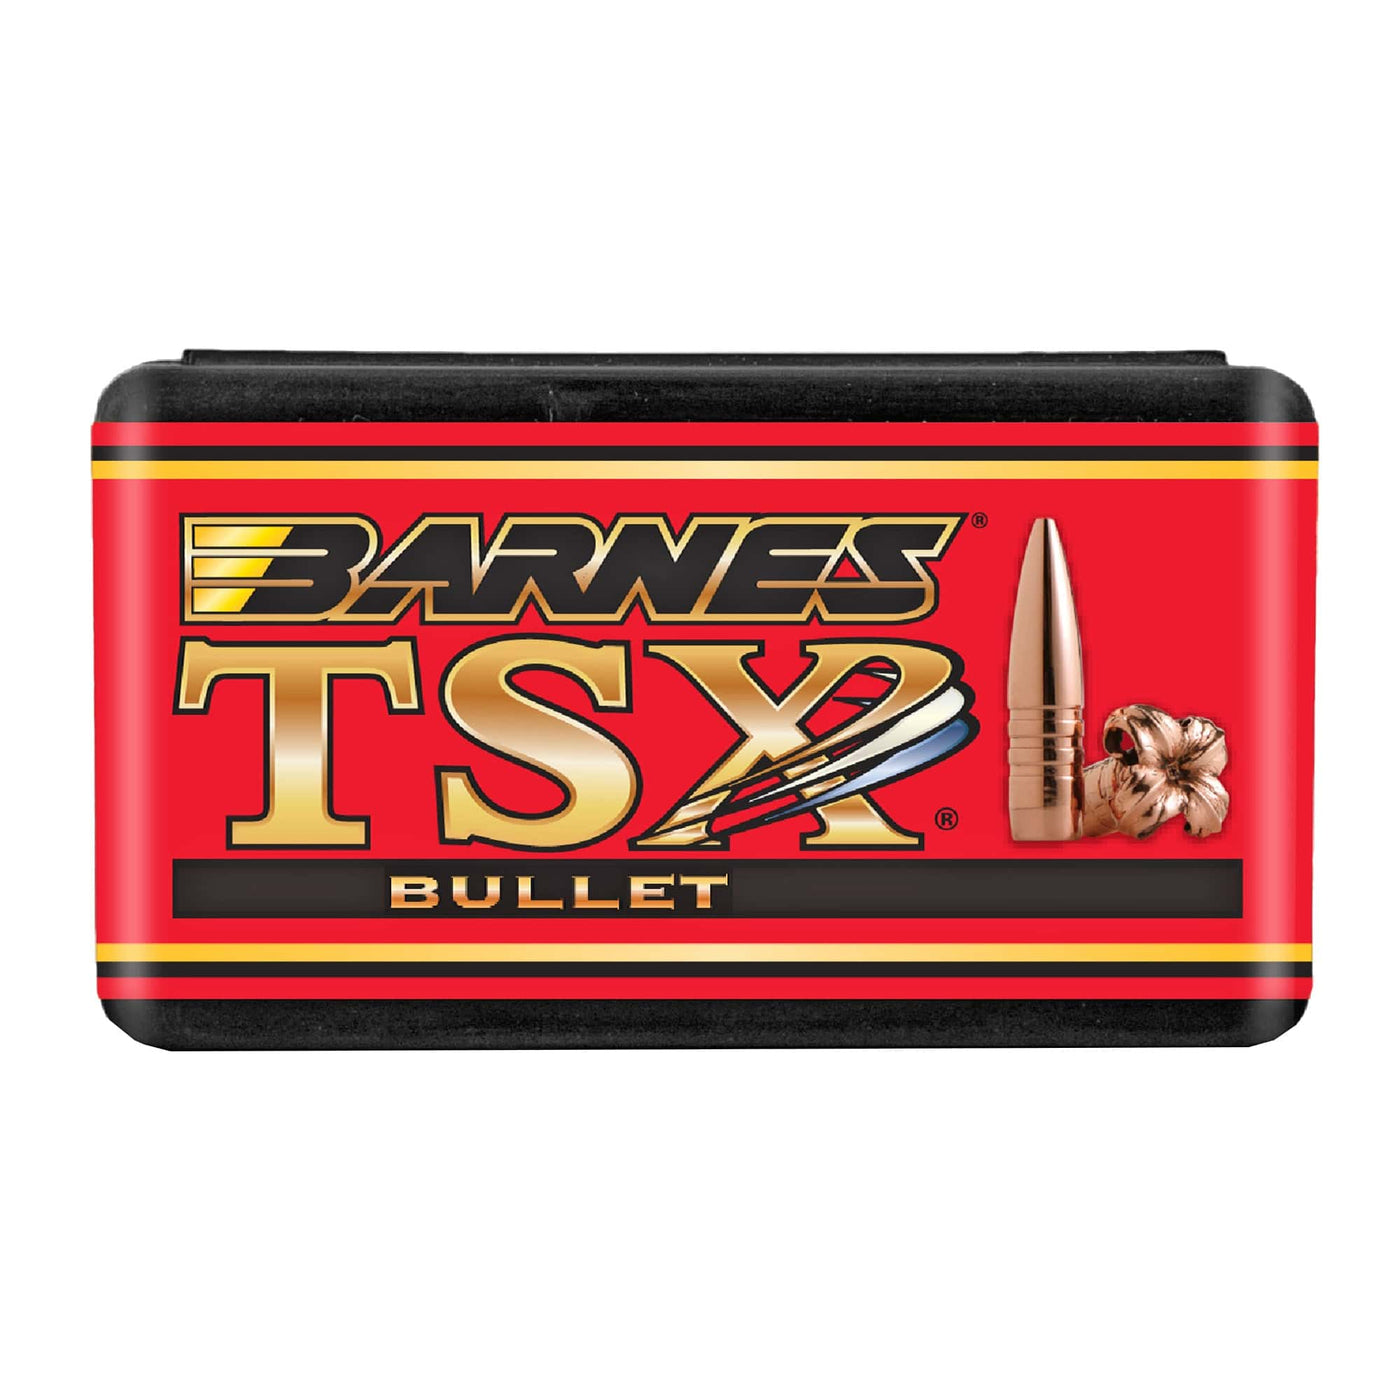 Remington Barnes Tsx Bullets 30 Cal. 168 Gr. 50 Pack 168 grain Reloading